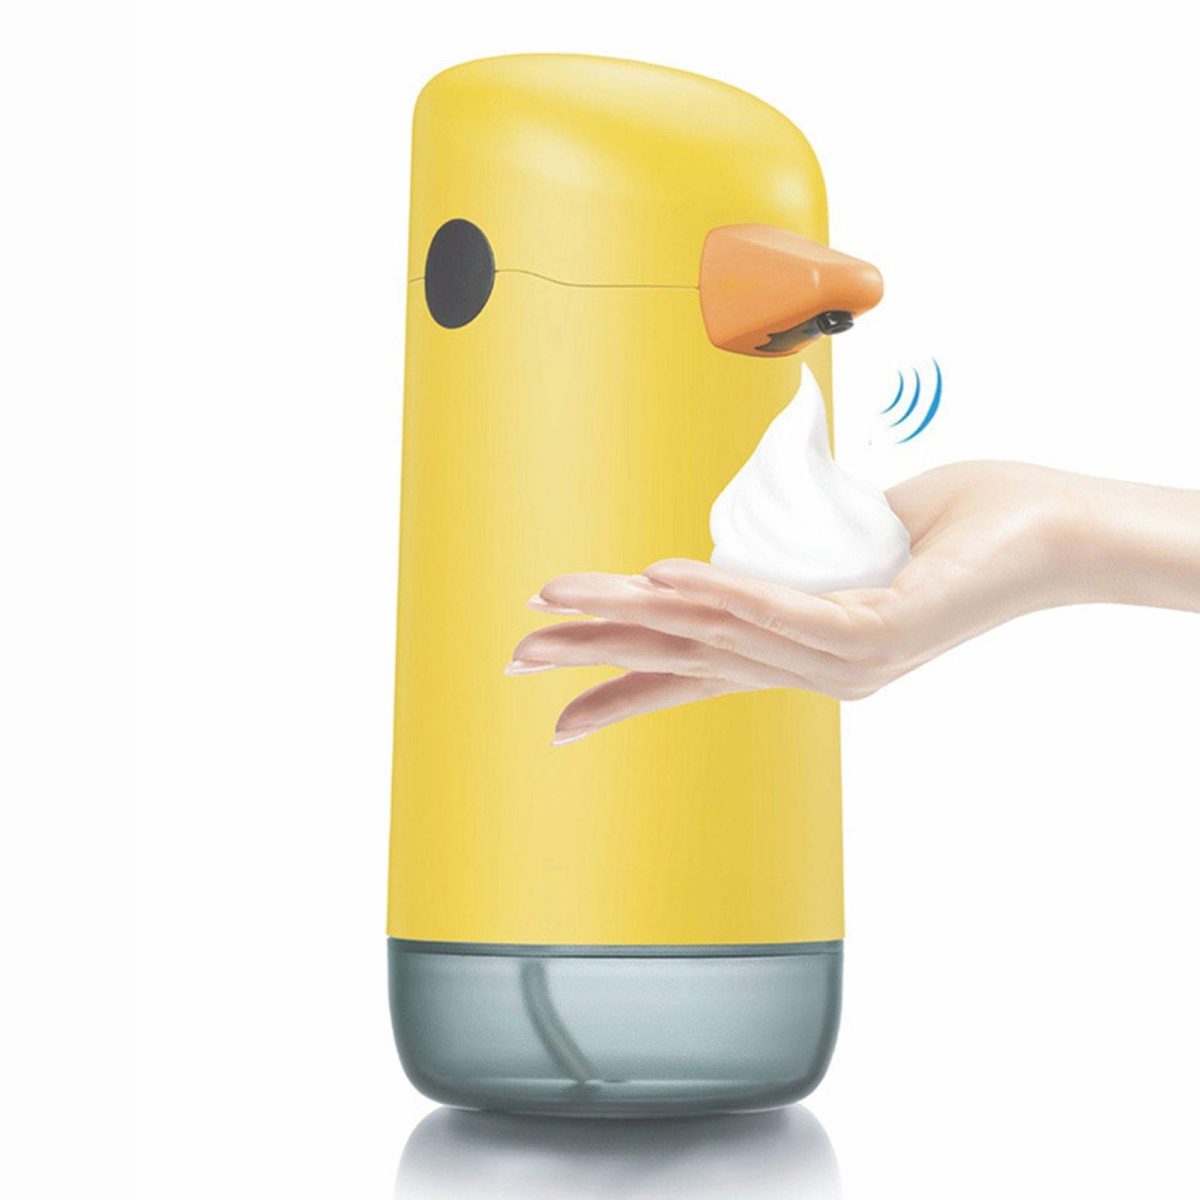 Automatic Sensor Liquid Touch Soap Dispenser - MaviGadget